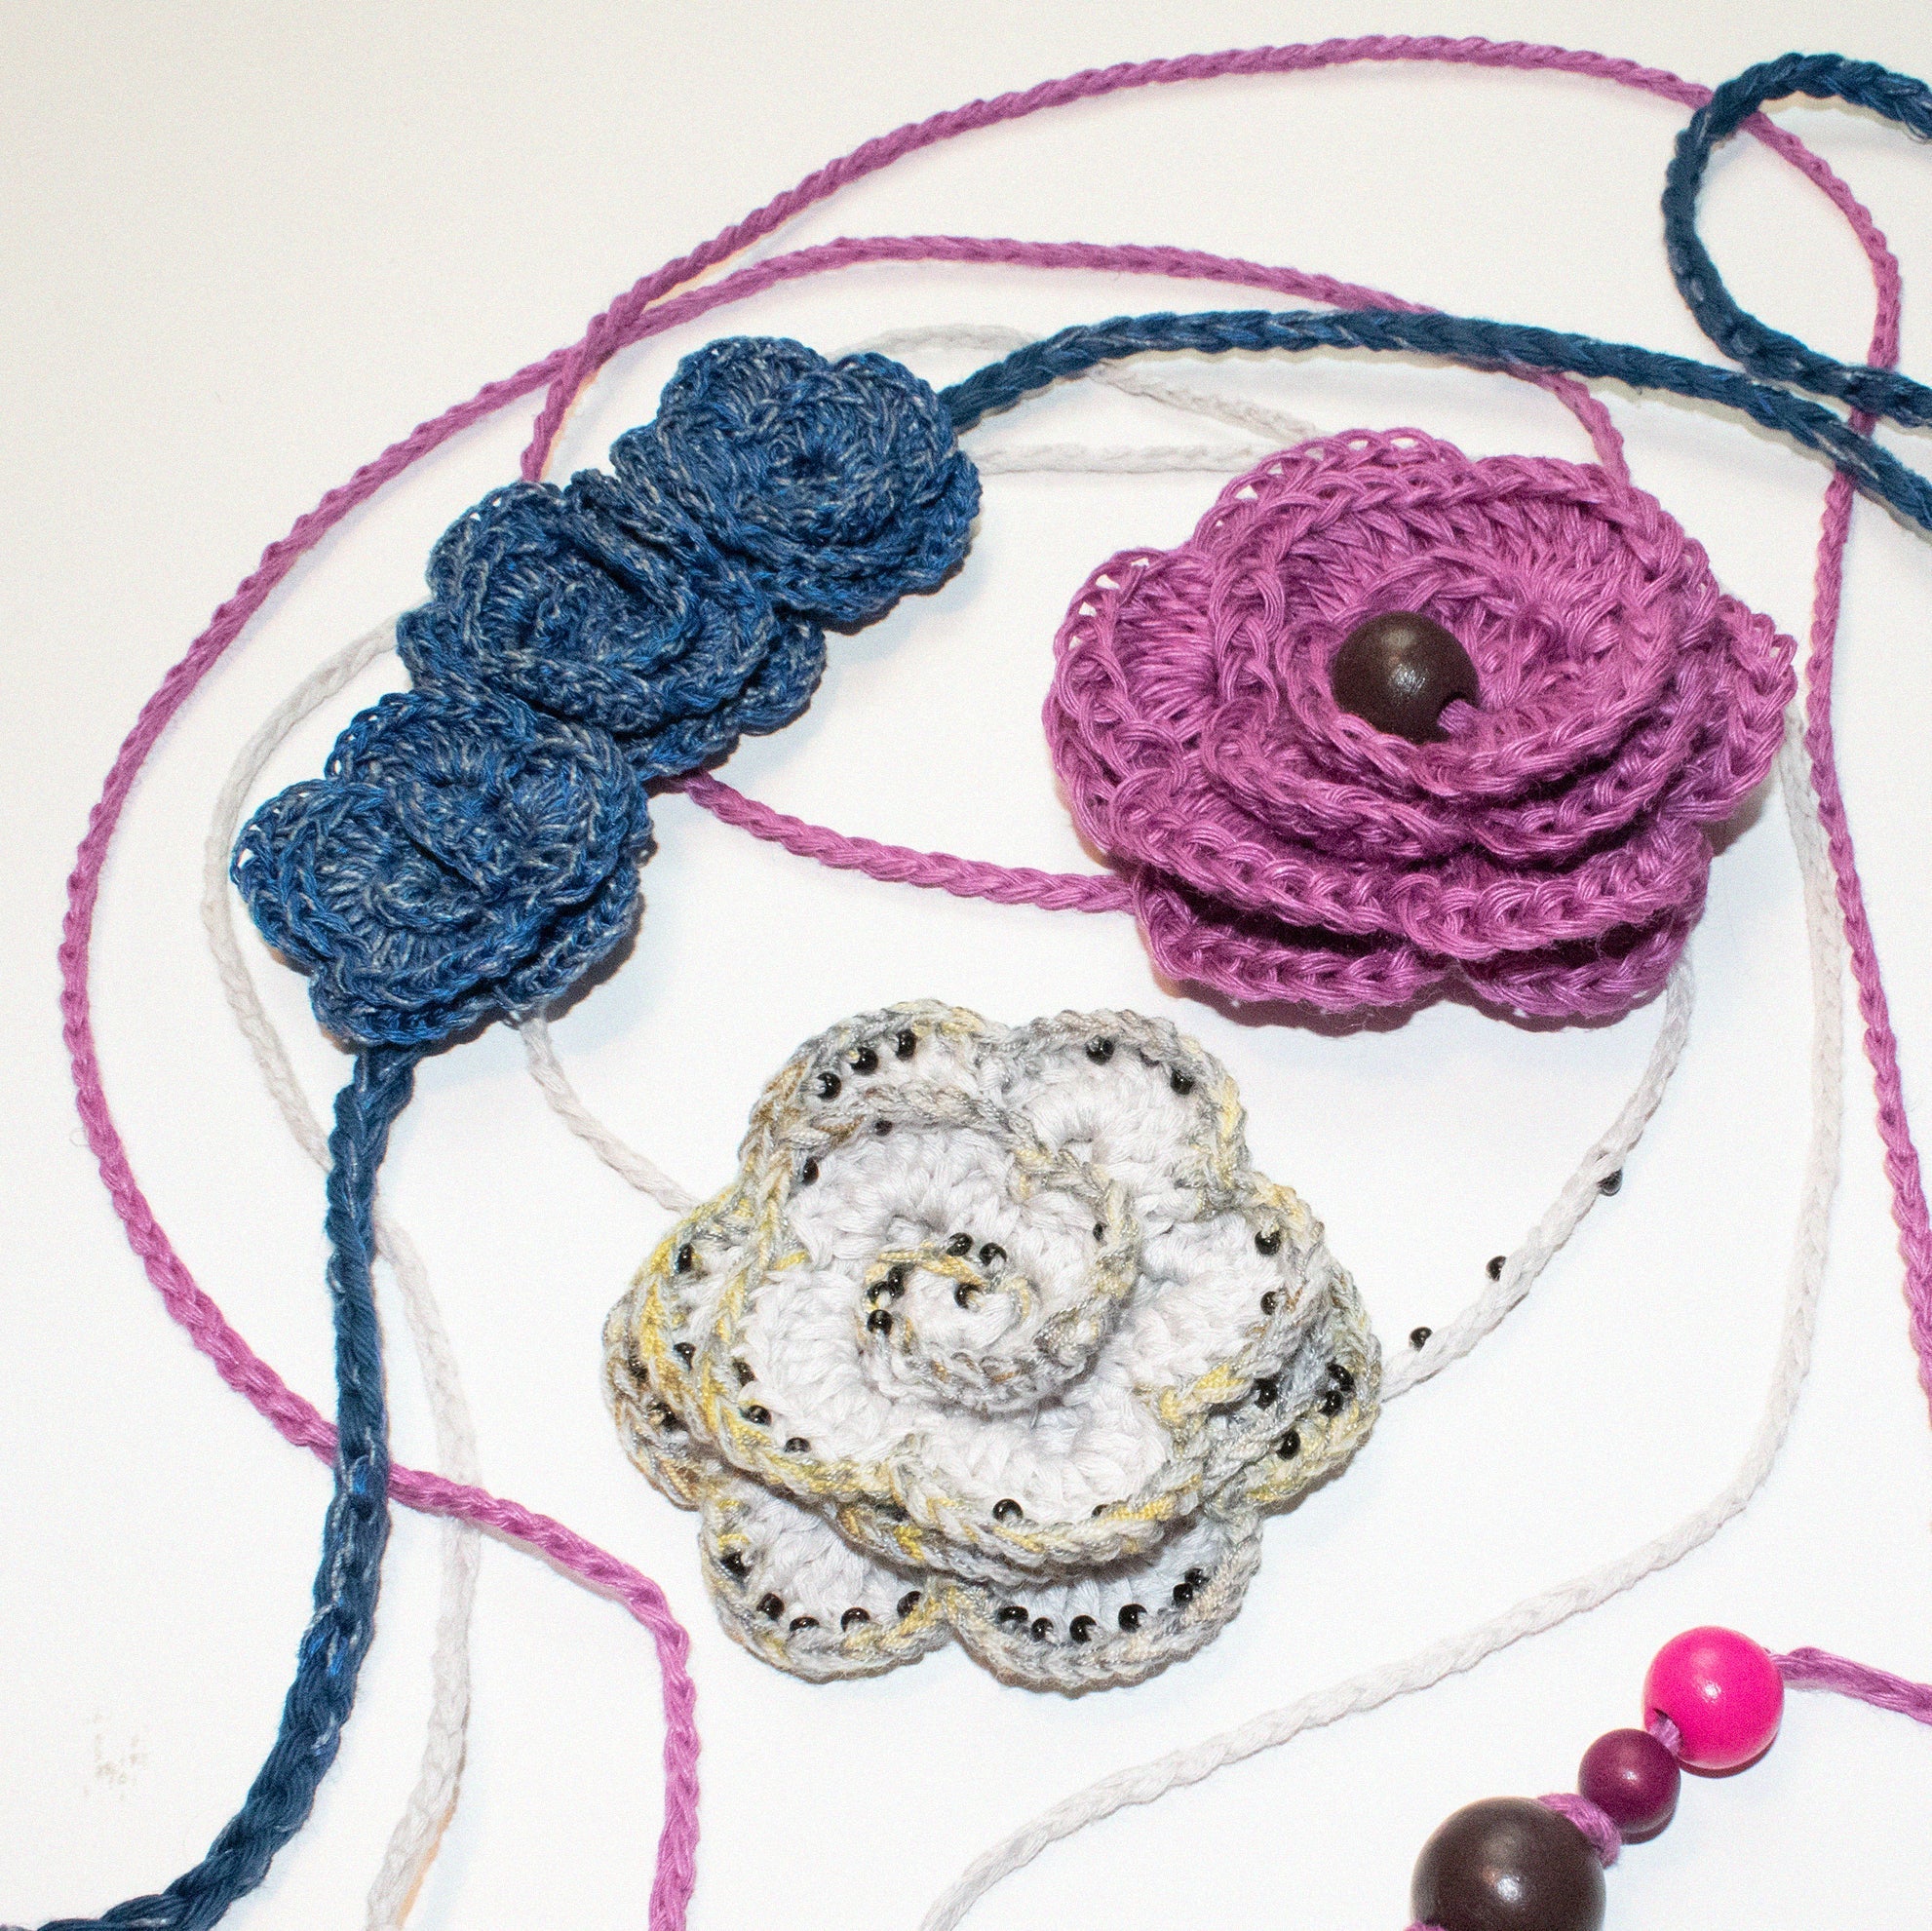 Crochet Beaded Rose Necklace Wrap in Dark Blue